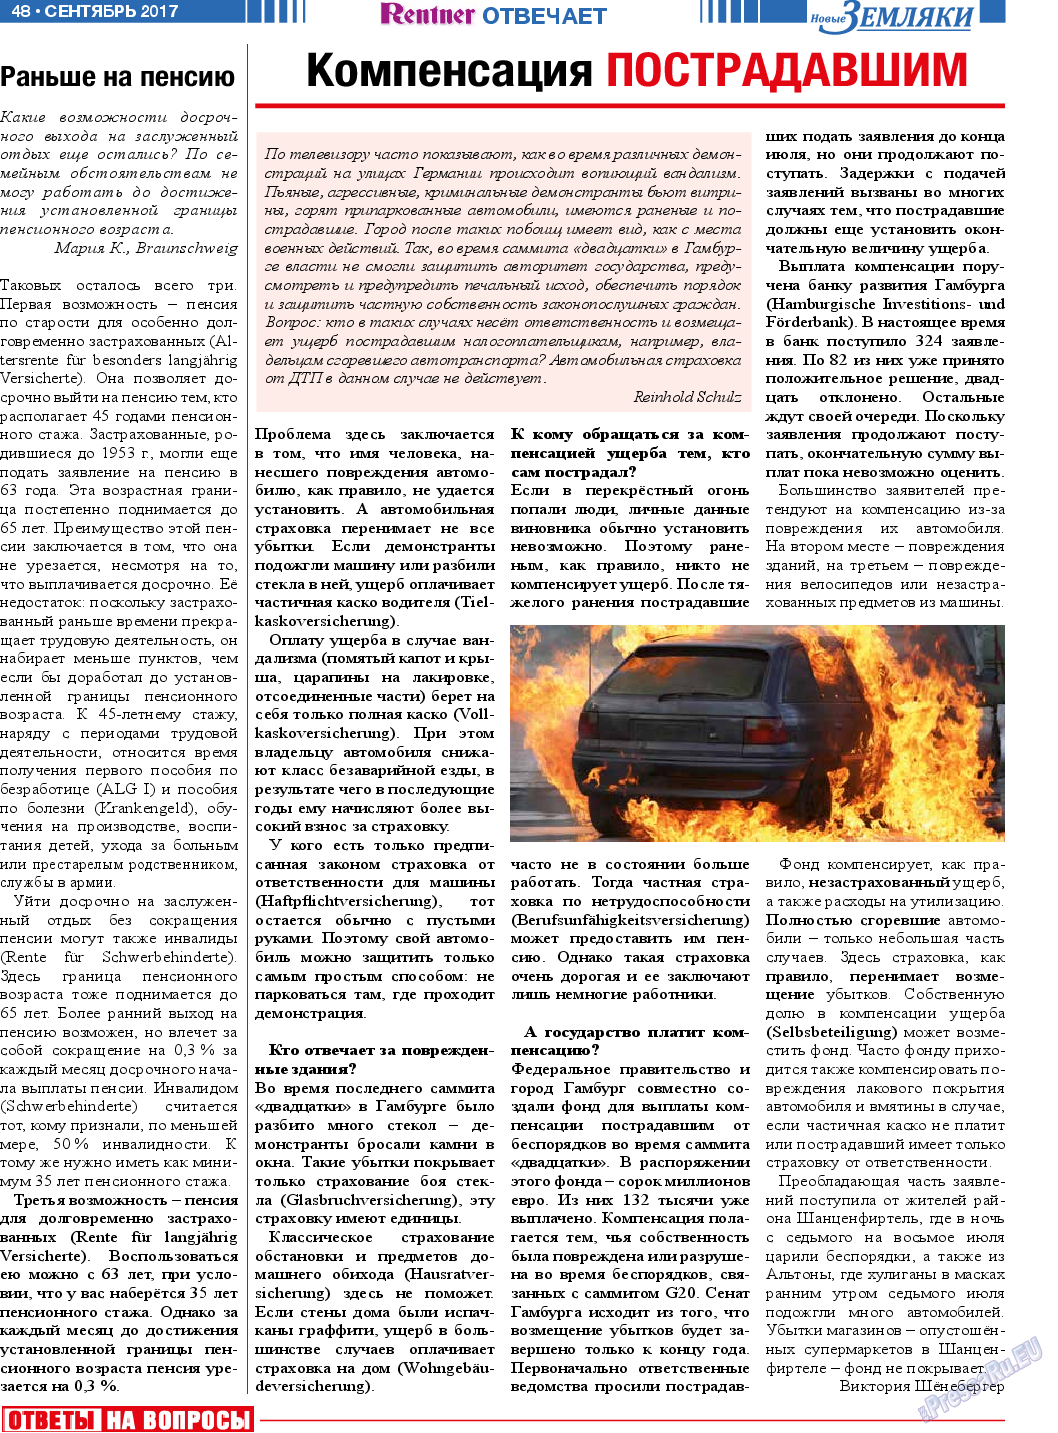 Новые Земляки, газета. 2017 №9 стр.48